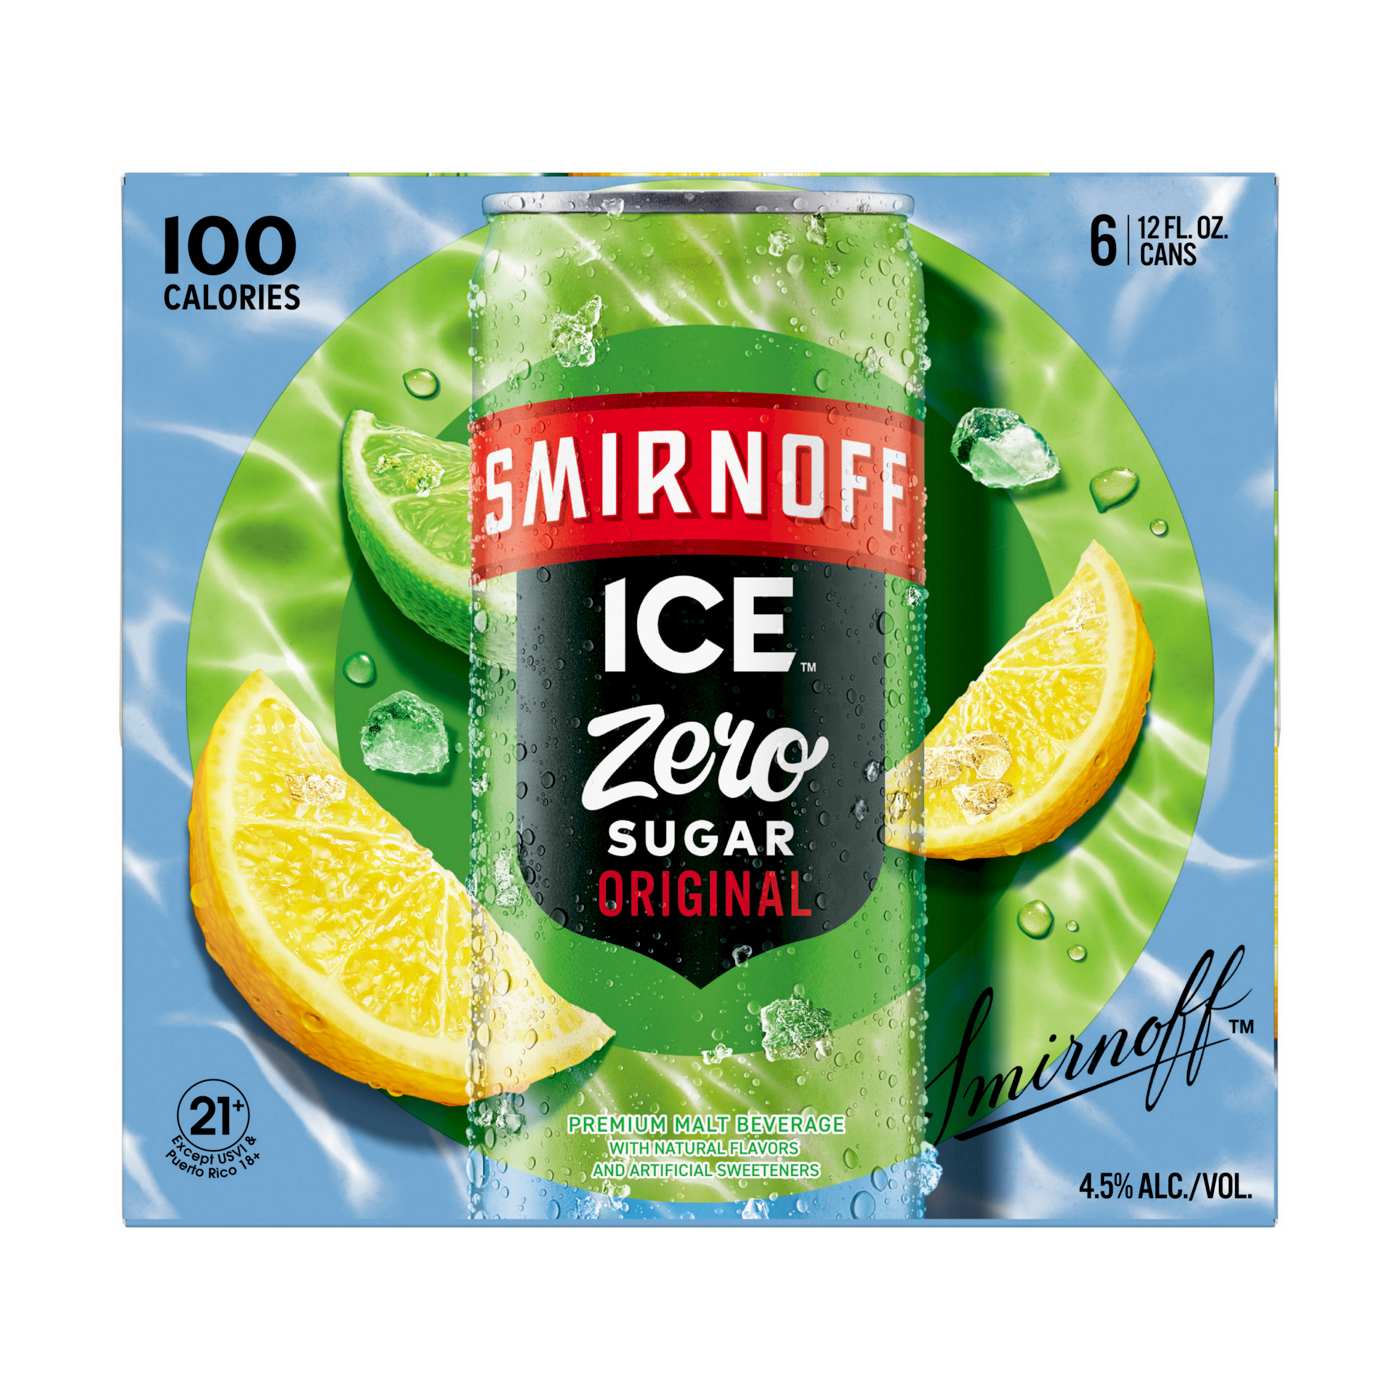 Smirnoff Ice Original Zero Sugar; image 1 of 3